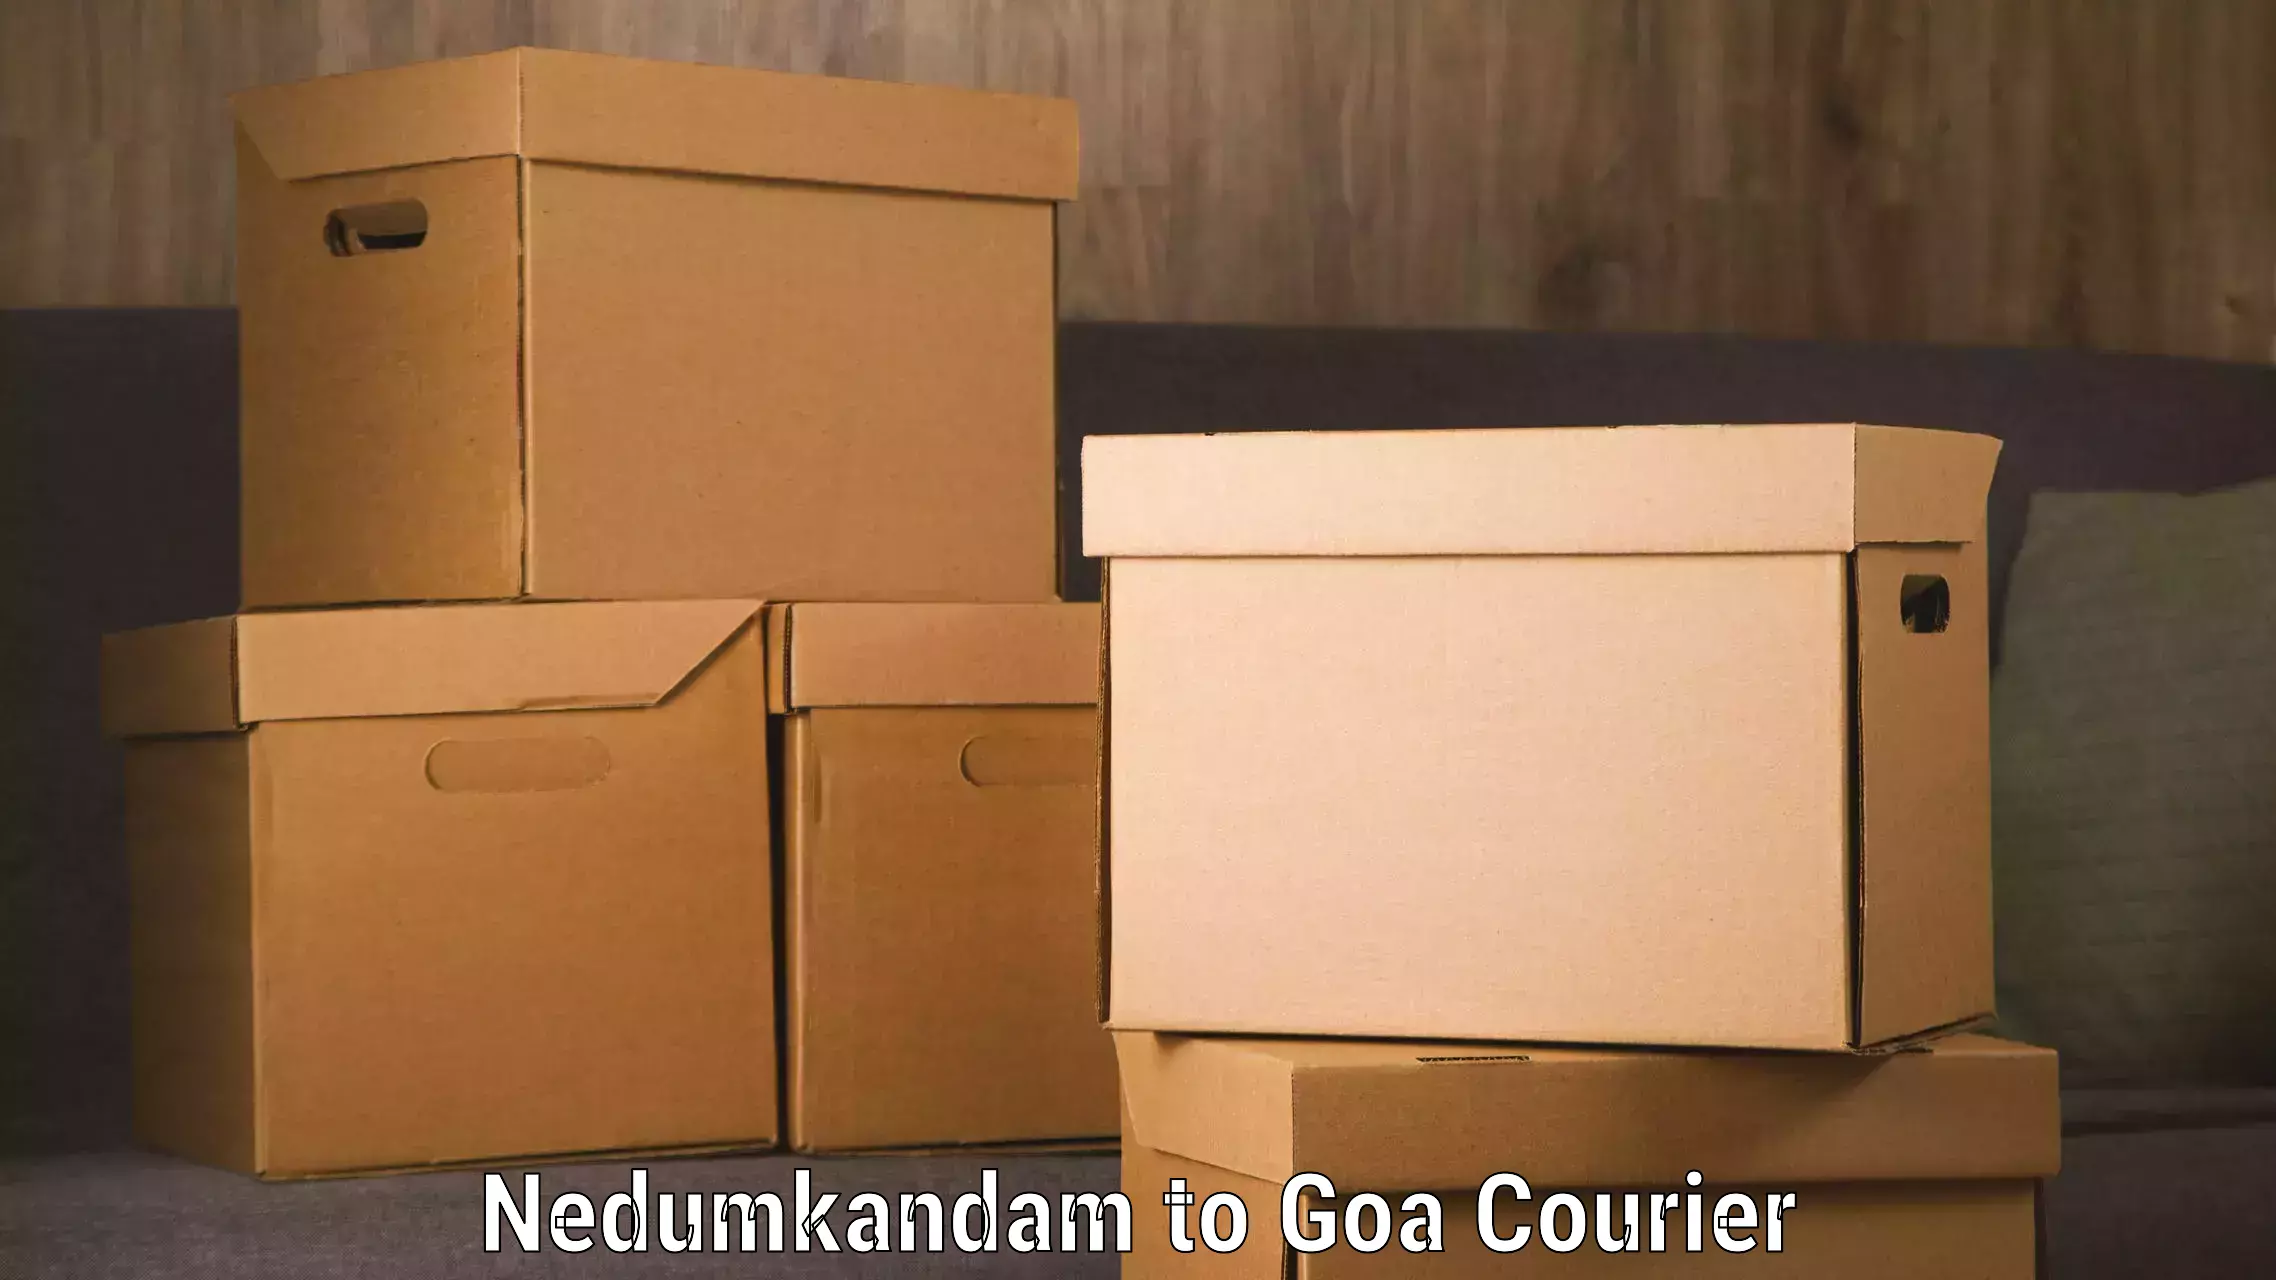 24-hour courier service Nedumkandam to NIT Goa